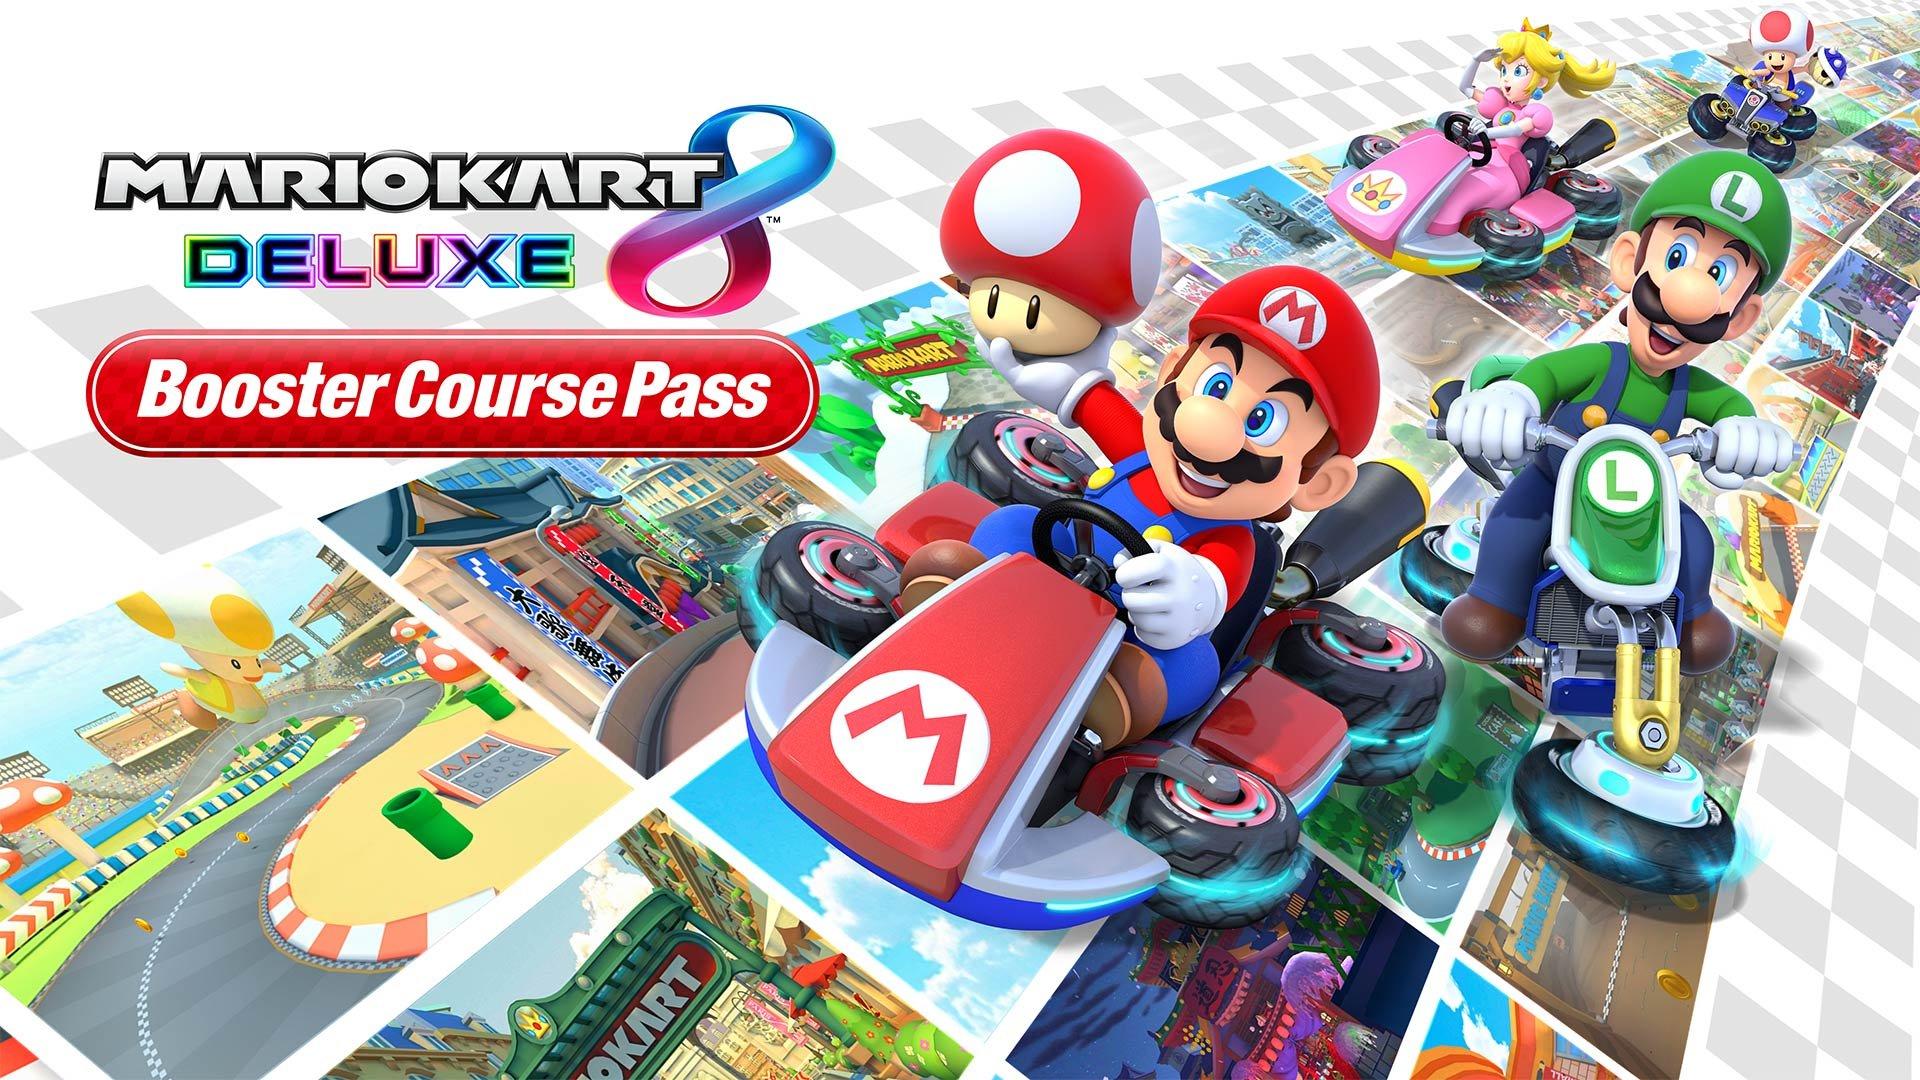 Bộ mở rộng Mario Kart 8 Deluxe thực sự là một đột phá lớn với những tính năng tuyệt vời. Sản phẩm đã thu hút được sự chú ý của rất nhiều người chơi và hứa hẹn mang lại cho bạn được nhiều trải nghiệm mới lạ. Nếu bạn yêu Mario Kart, hãy đặt mua ngay bộ mở rộng để không bỏ lỡ những trận đua hấp dẫn nhất nhé!